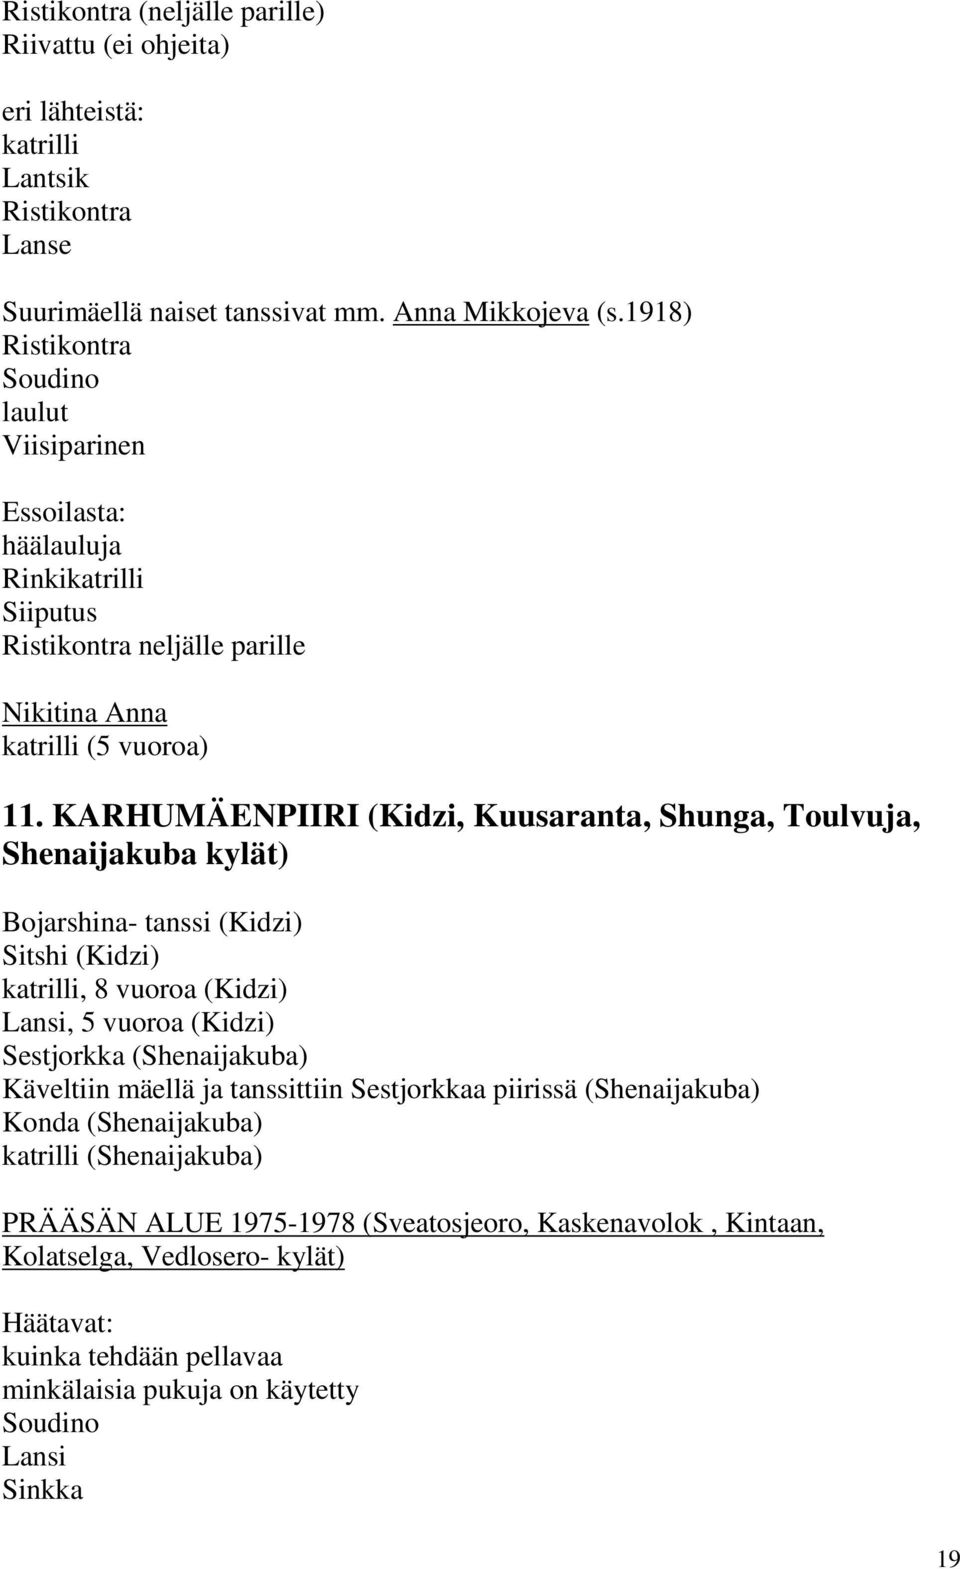 KARHUMÄENPIIRI (Kidzi, Kuusaranta, Shunga, Toulvuja, Shenaijakuba kylät) Bojarshina- tanssi (Kidzi) Sitshi (Kidzi) katrilli, 8 vuoroa (Kidzi) Lansi, 5 vuoroa (Kidzi) Sestjorkka (Shenaijakuba)